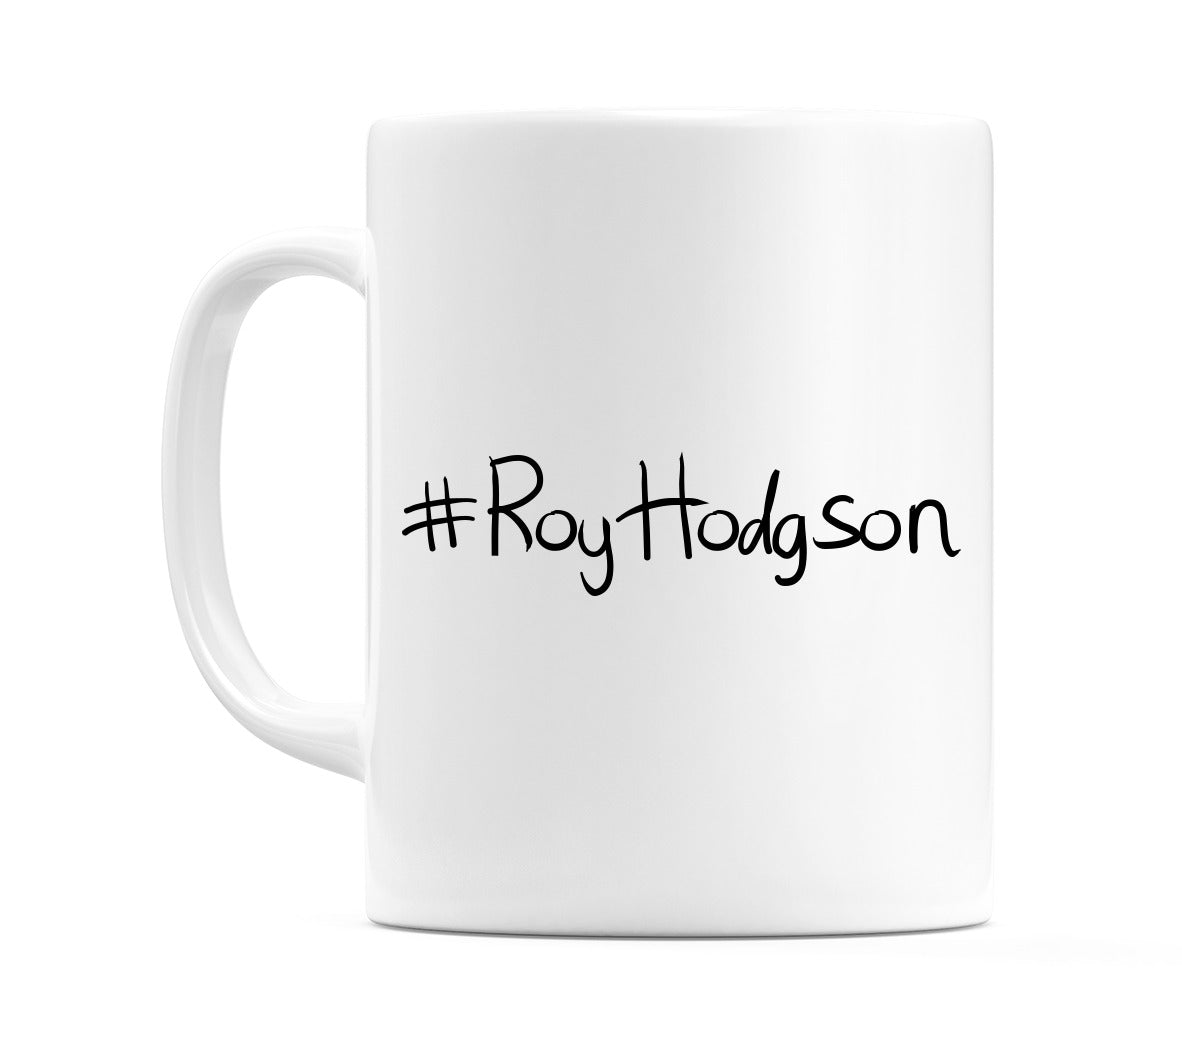 #RoyHodgson Mug